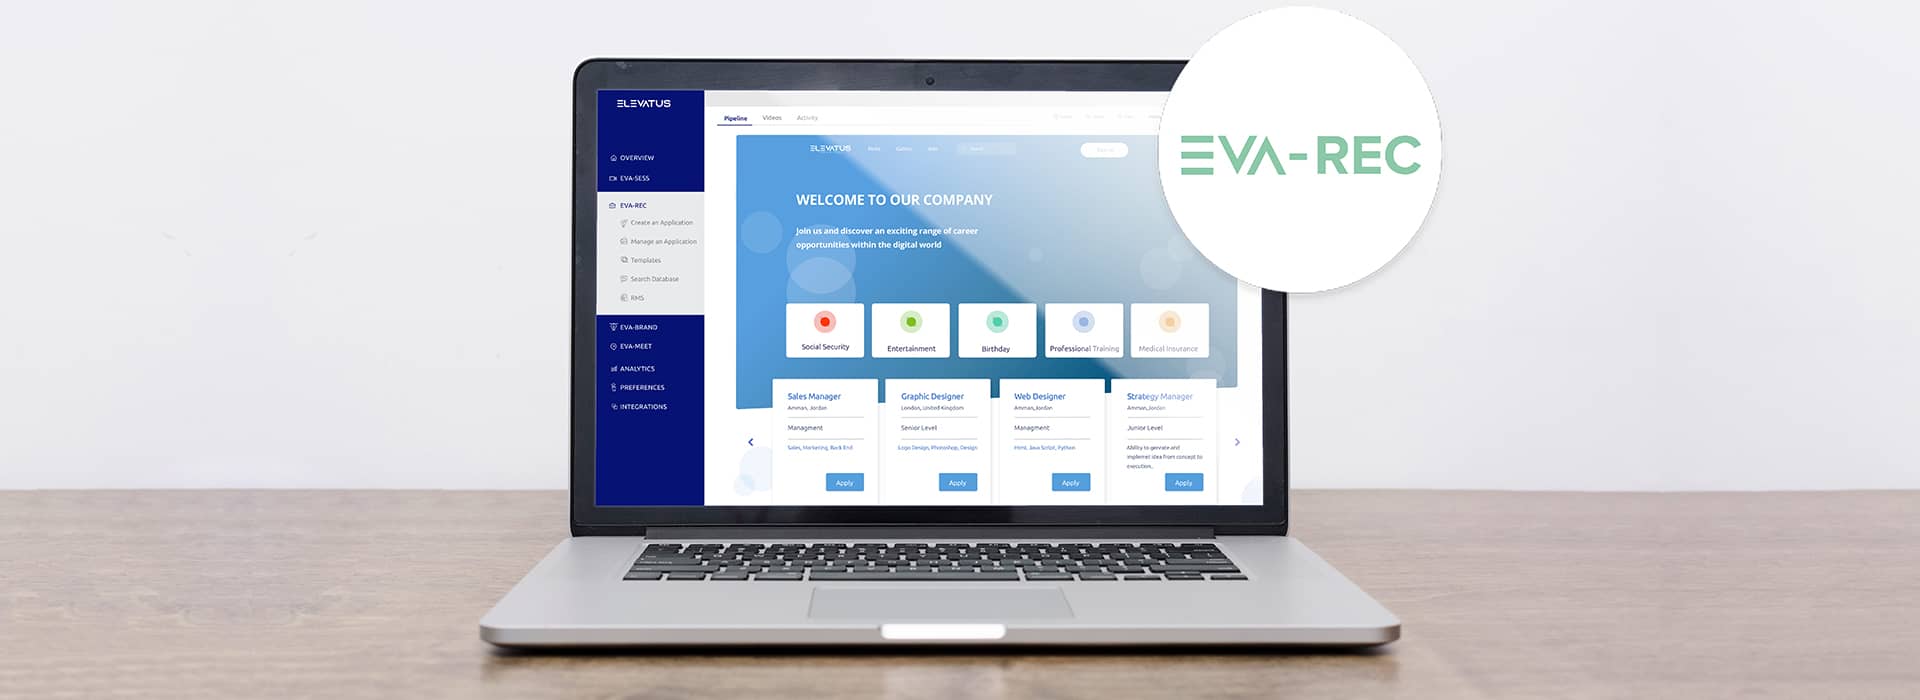 EVA-REC's Applicant Tracking System